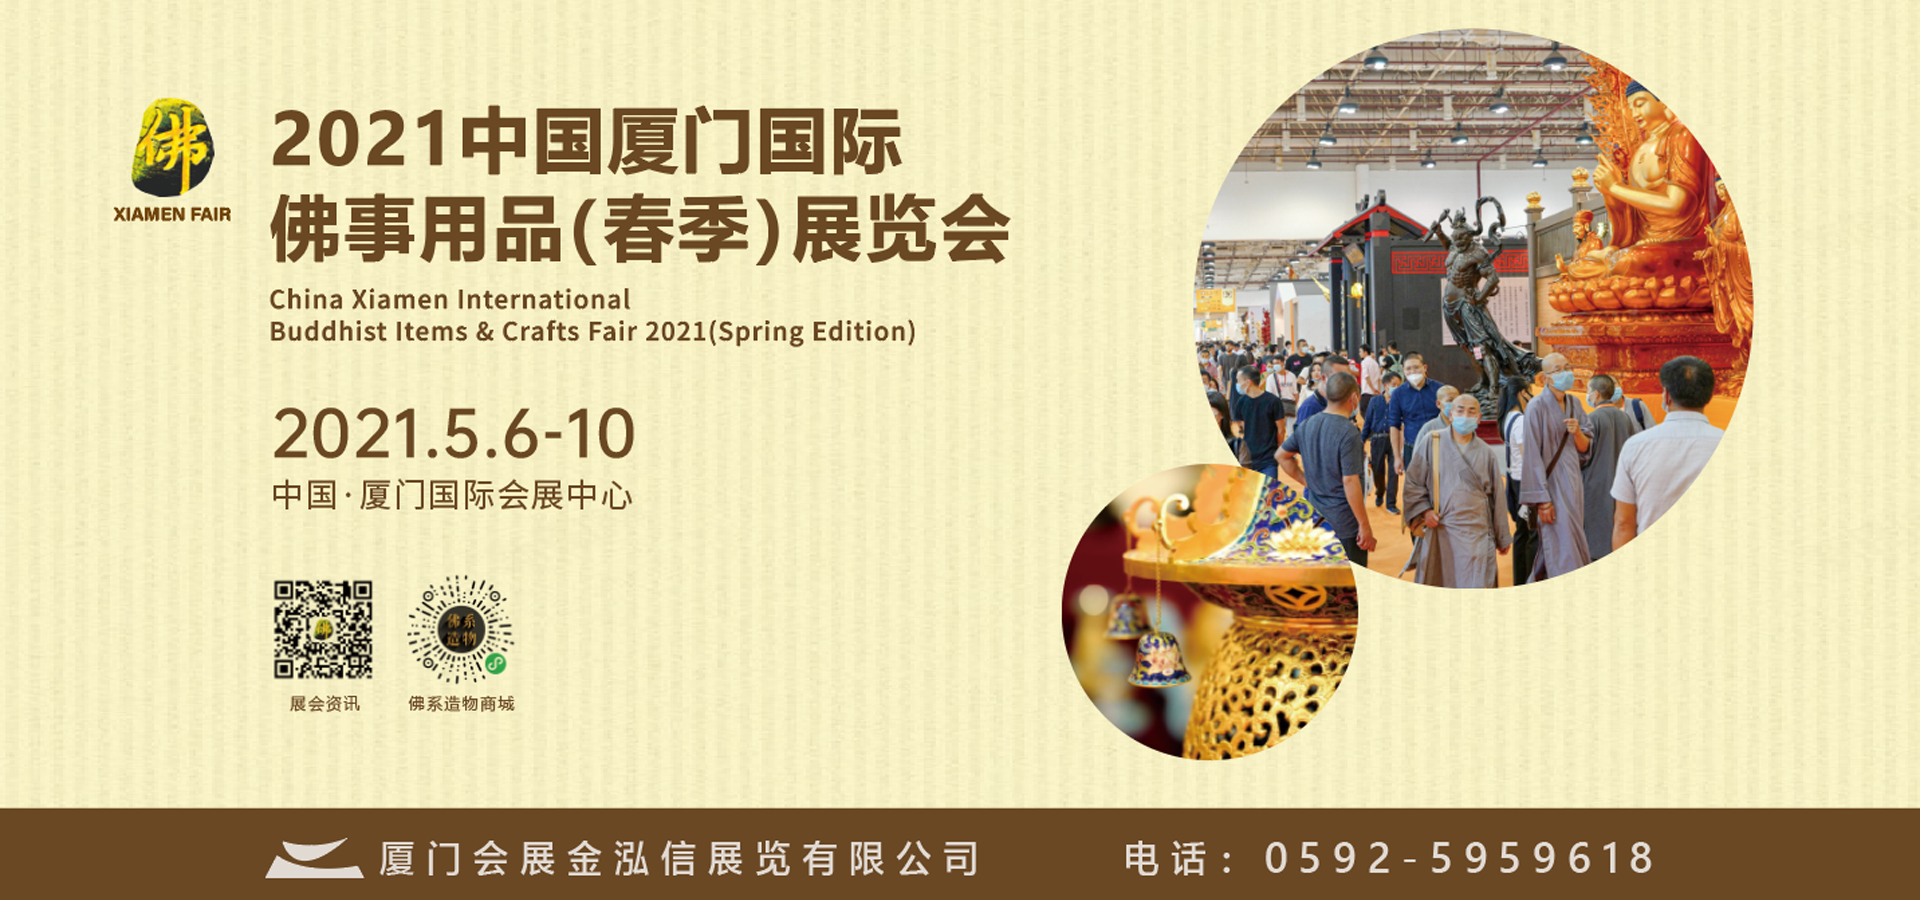 2020中国厦门佛事用品（春季）展览会与厦门寺院建筑与设计展览会同期举行，敬请关注！